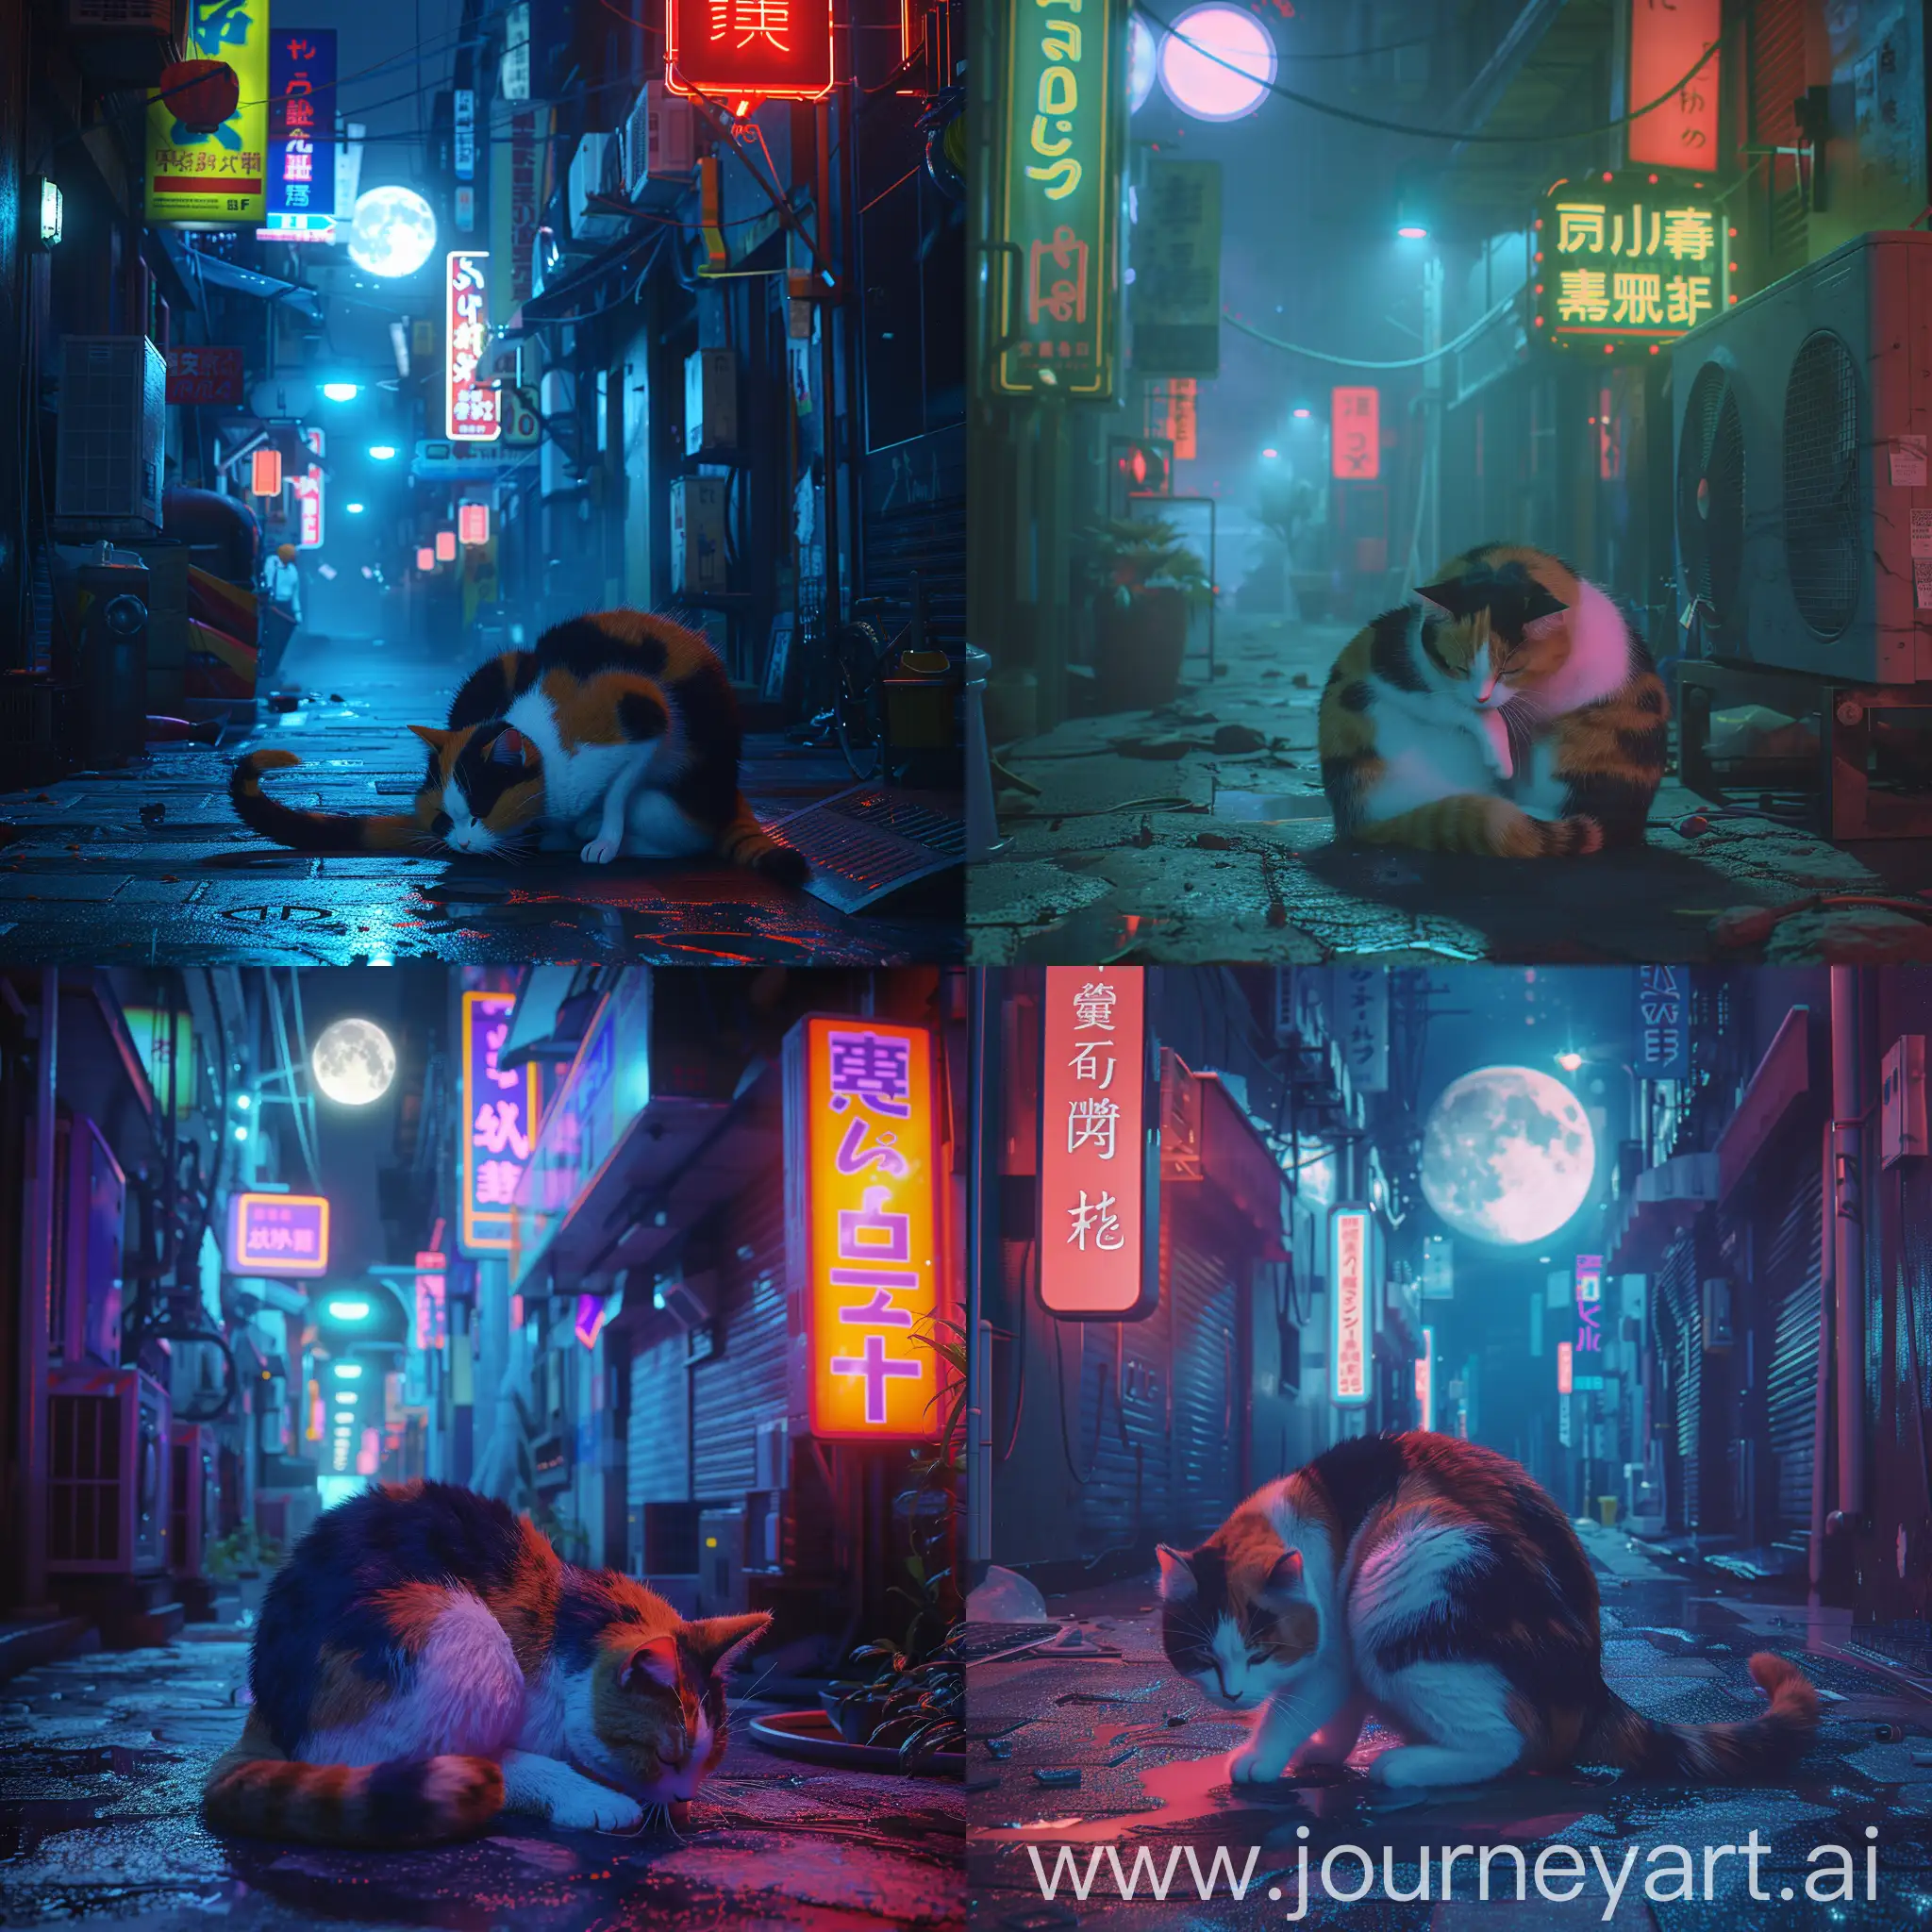 Futuristic-Urban-Calico-Cat-Cleaning-Under-Neon-Moonlight